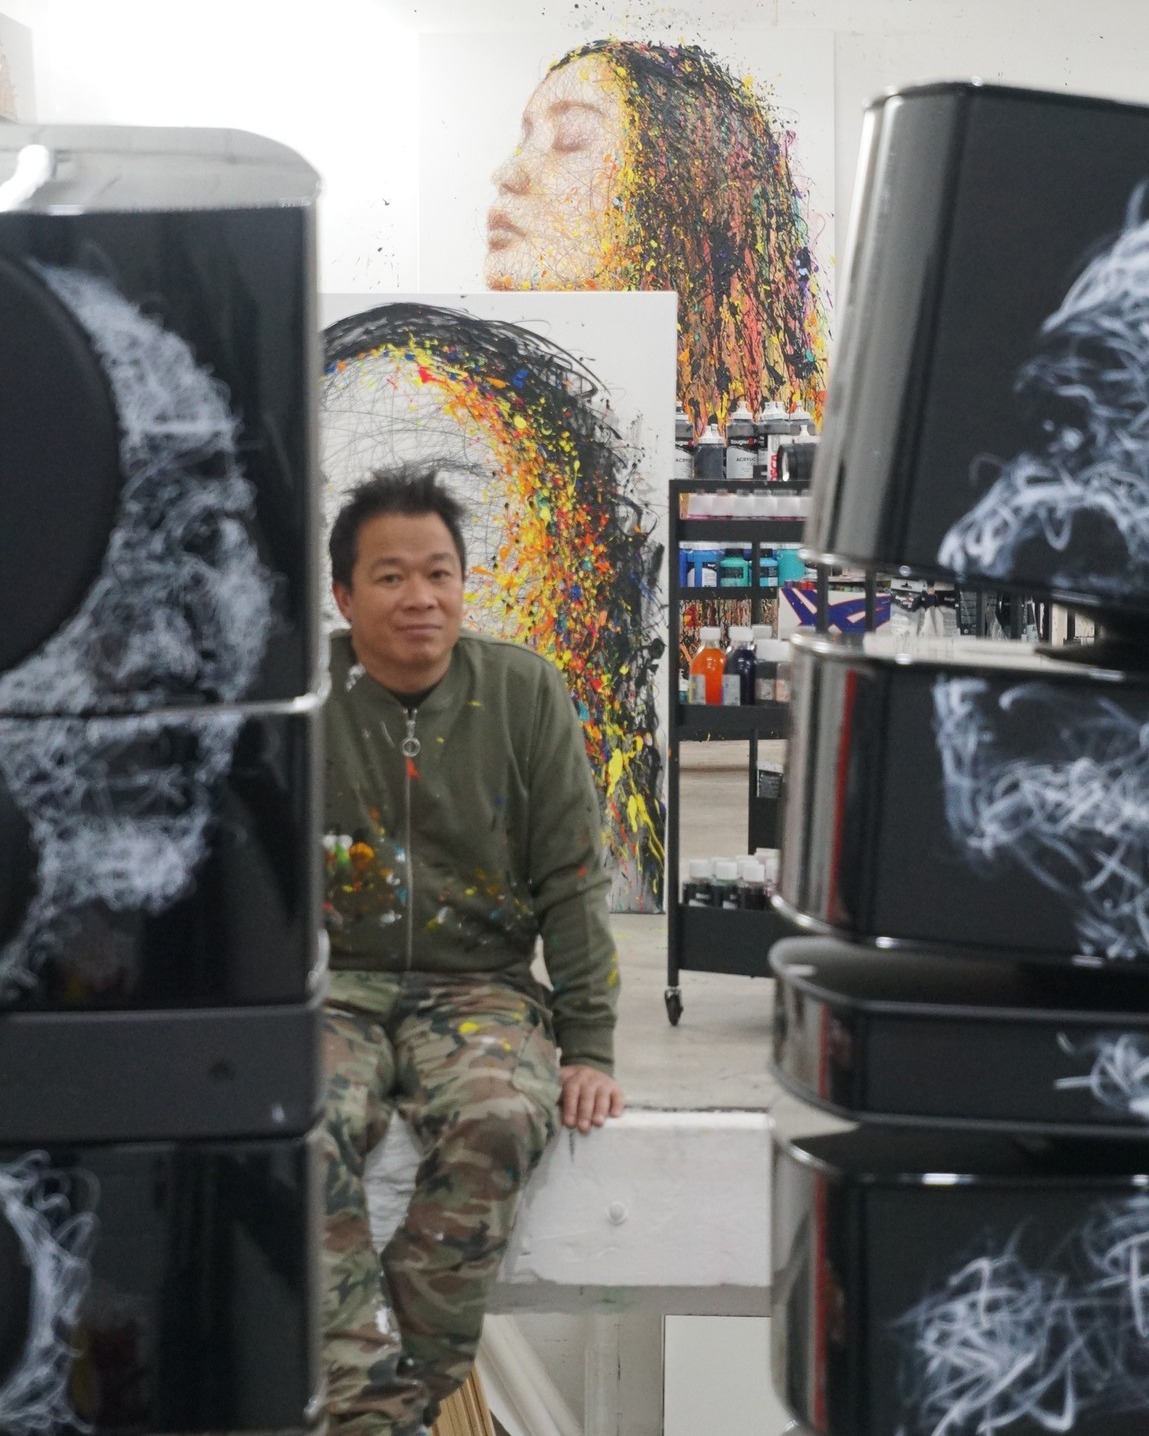 Focal Arts - Dự án nghệ thuật được mở màn ấn tượng bởi nghệ sĩ gốc Việt  | Audio Hoàng Hải